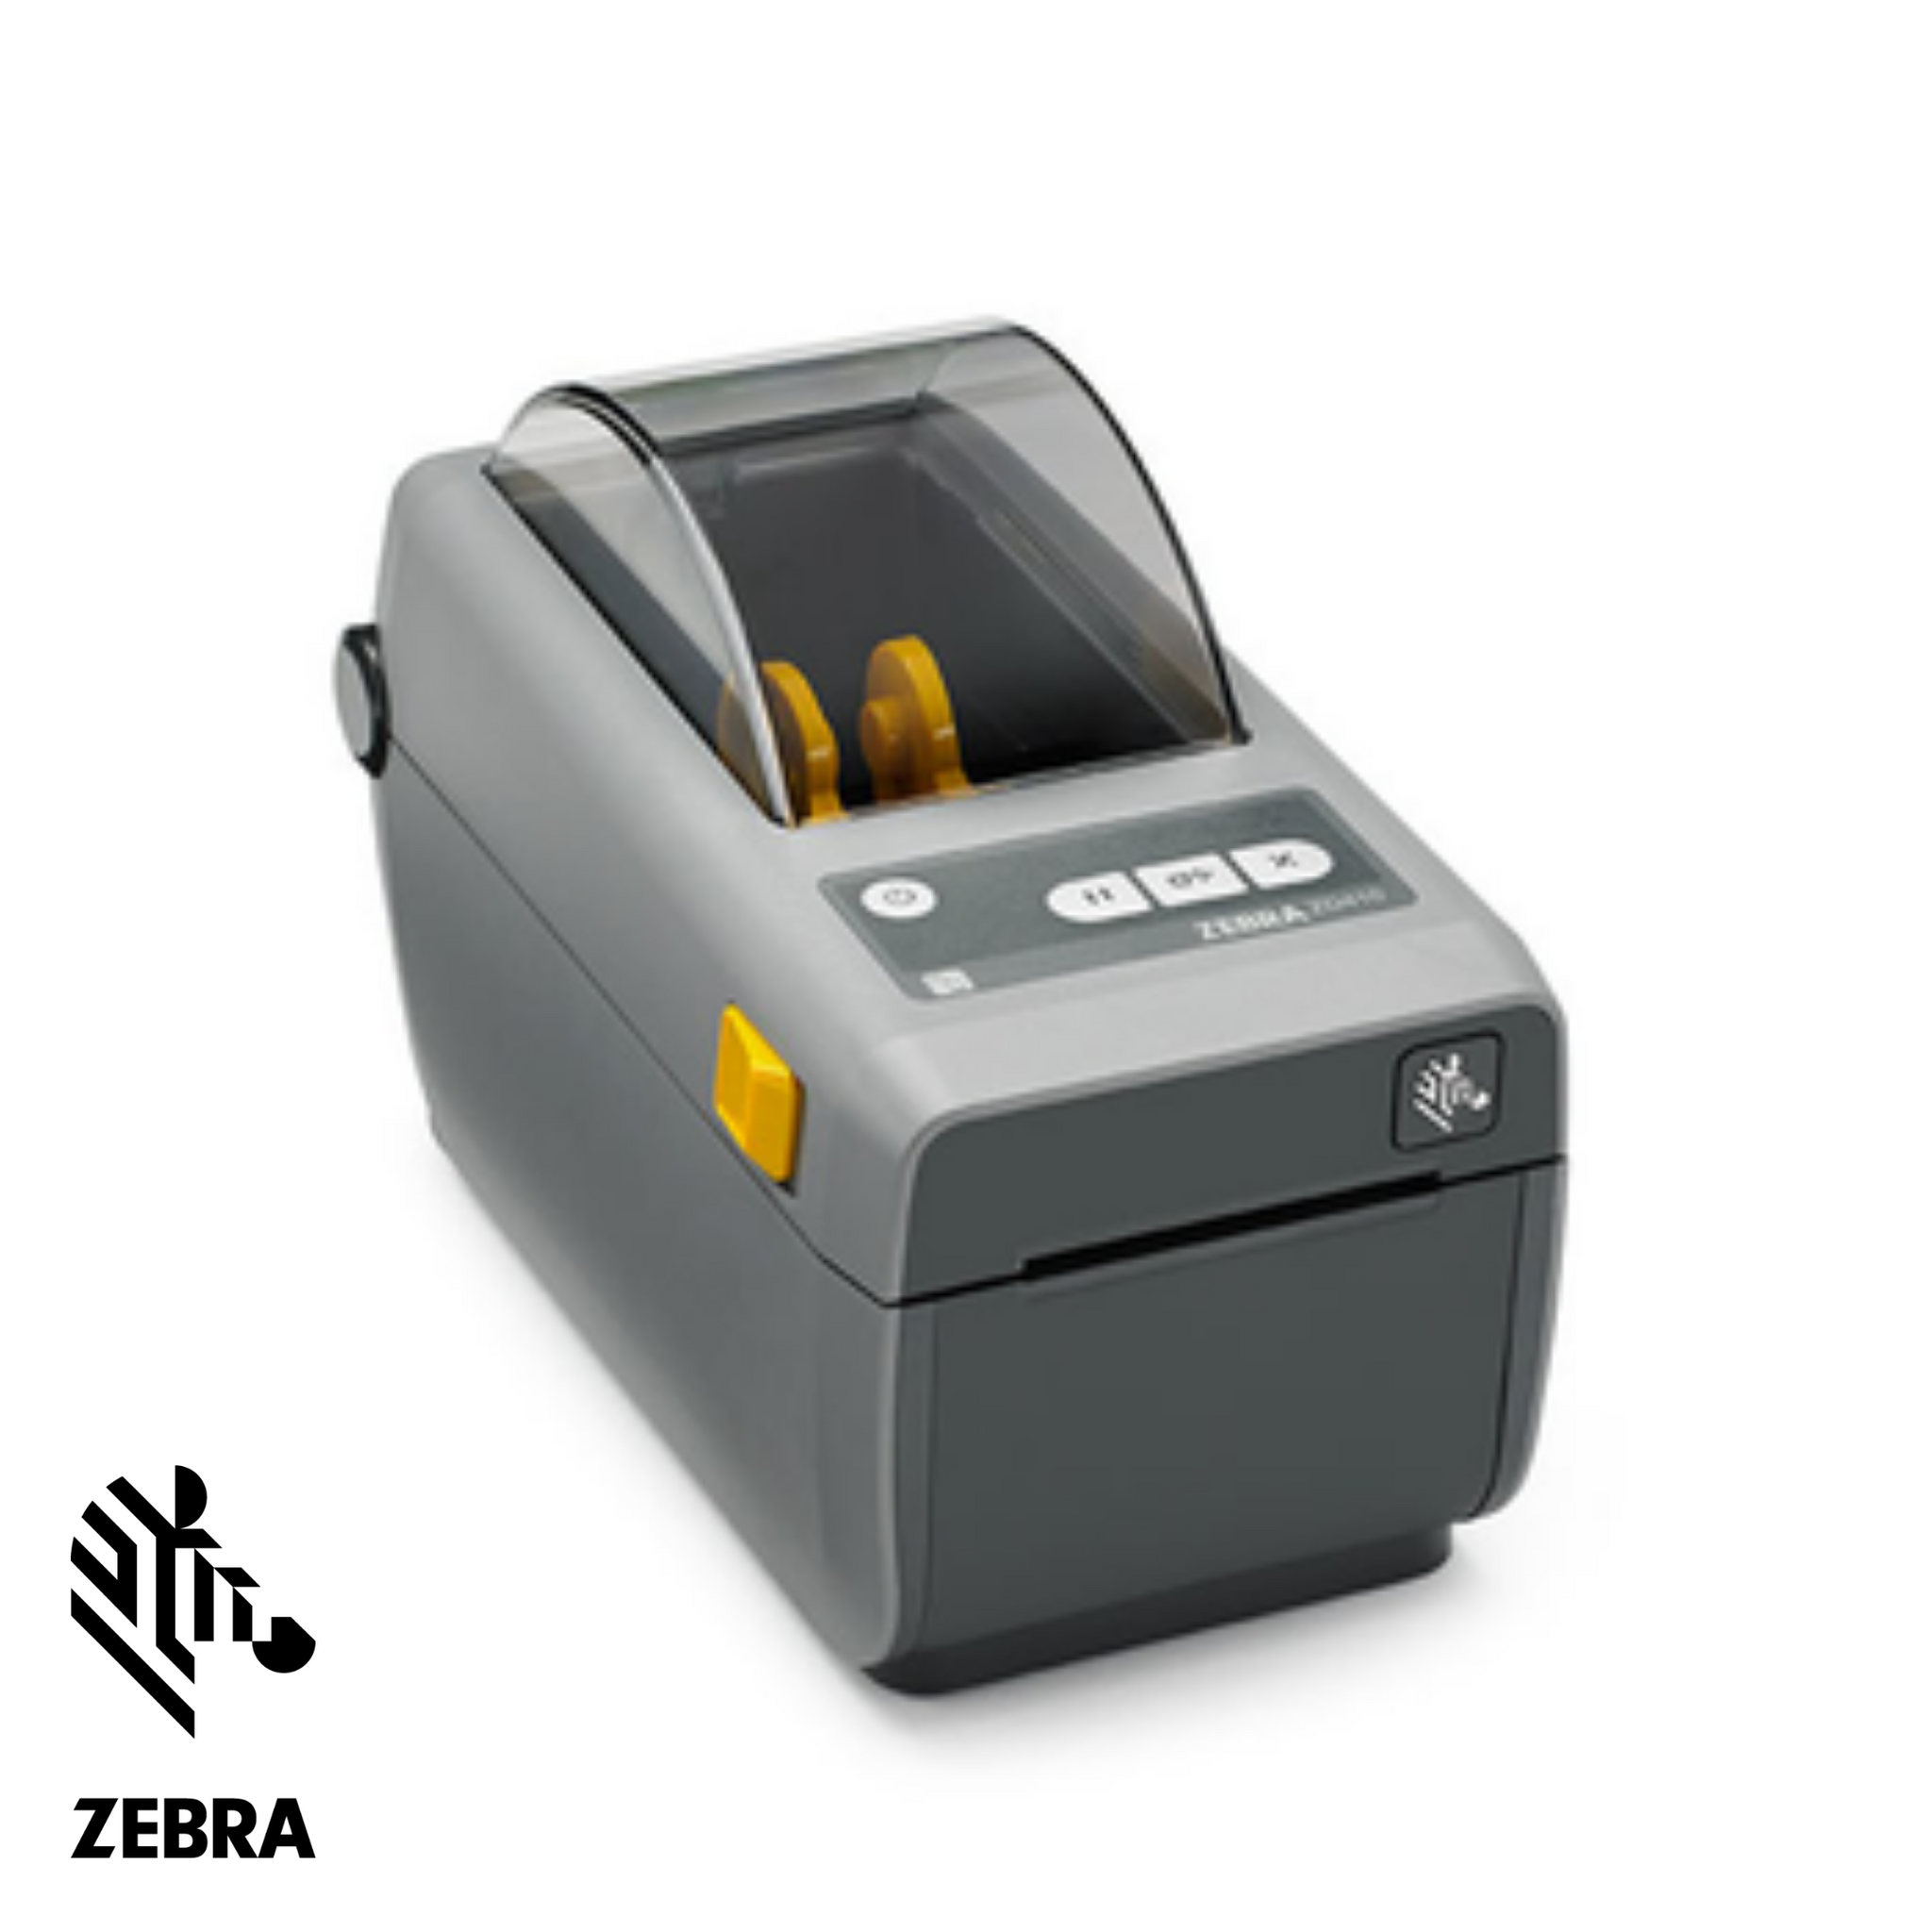 Zebra Zd410 Sale Online, SAVE 55%.